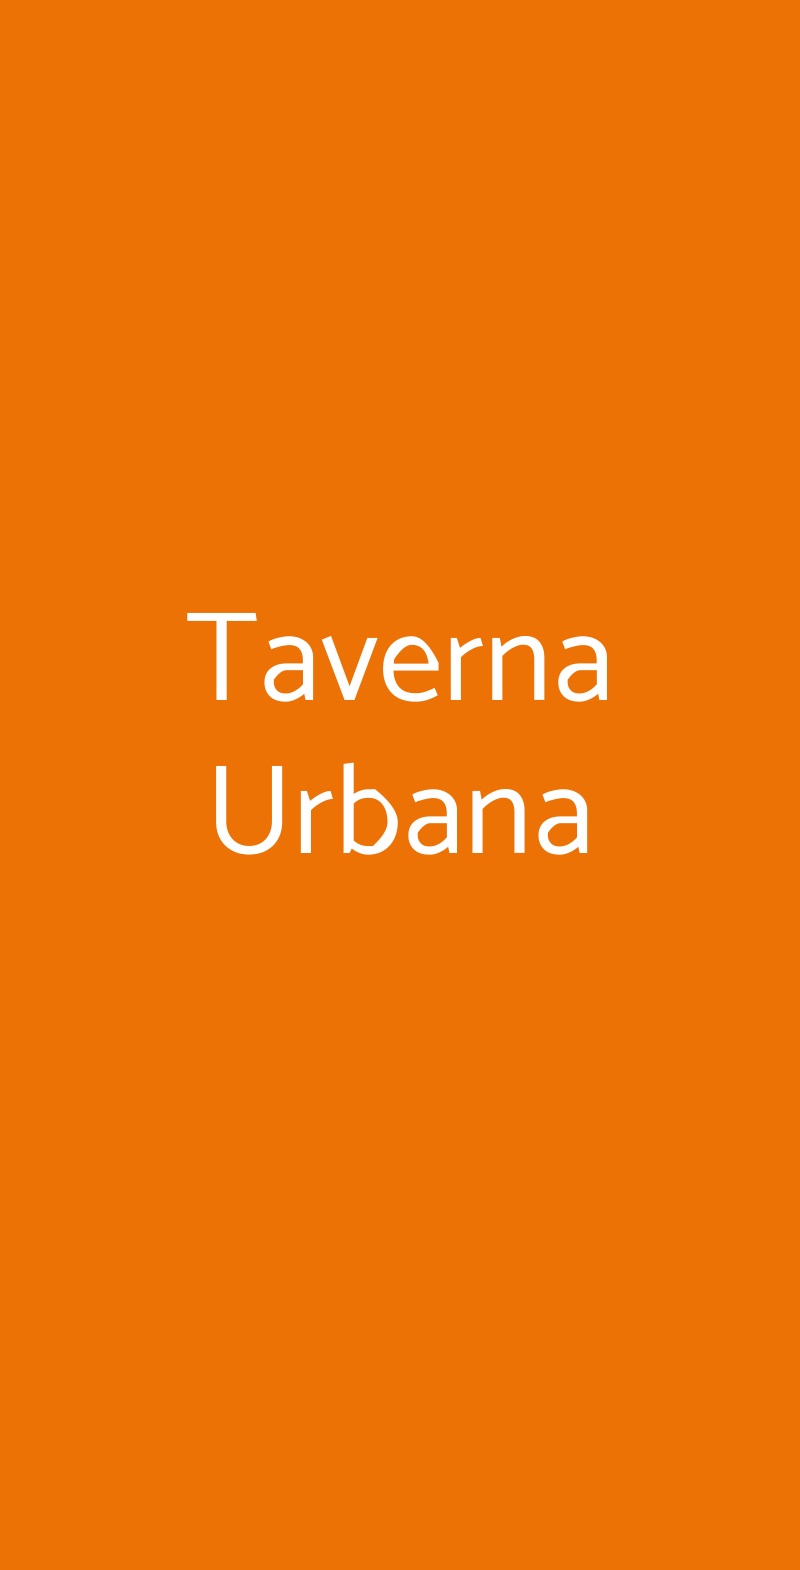 Taverna Urbana Roma menù 1 pagina